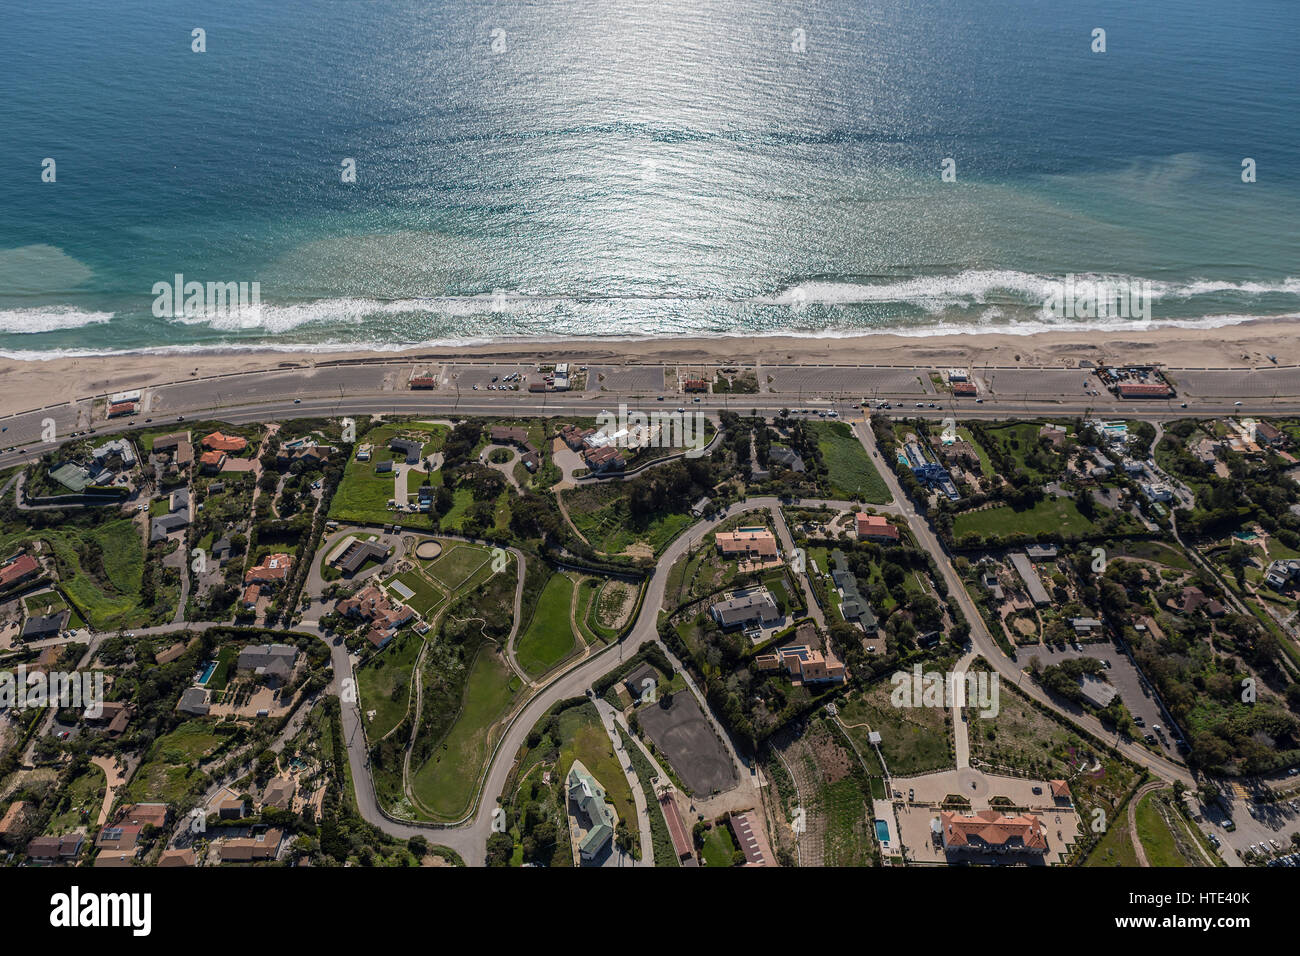 Premium Photo  An aerial view of zuma beach and mountains against